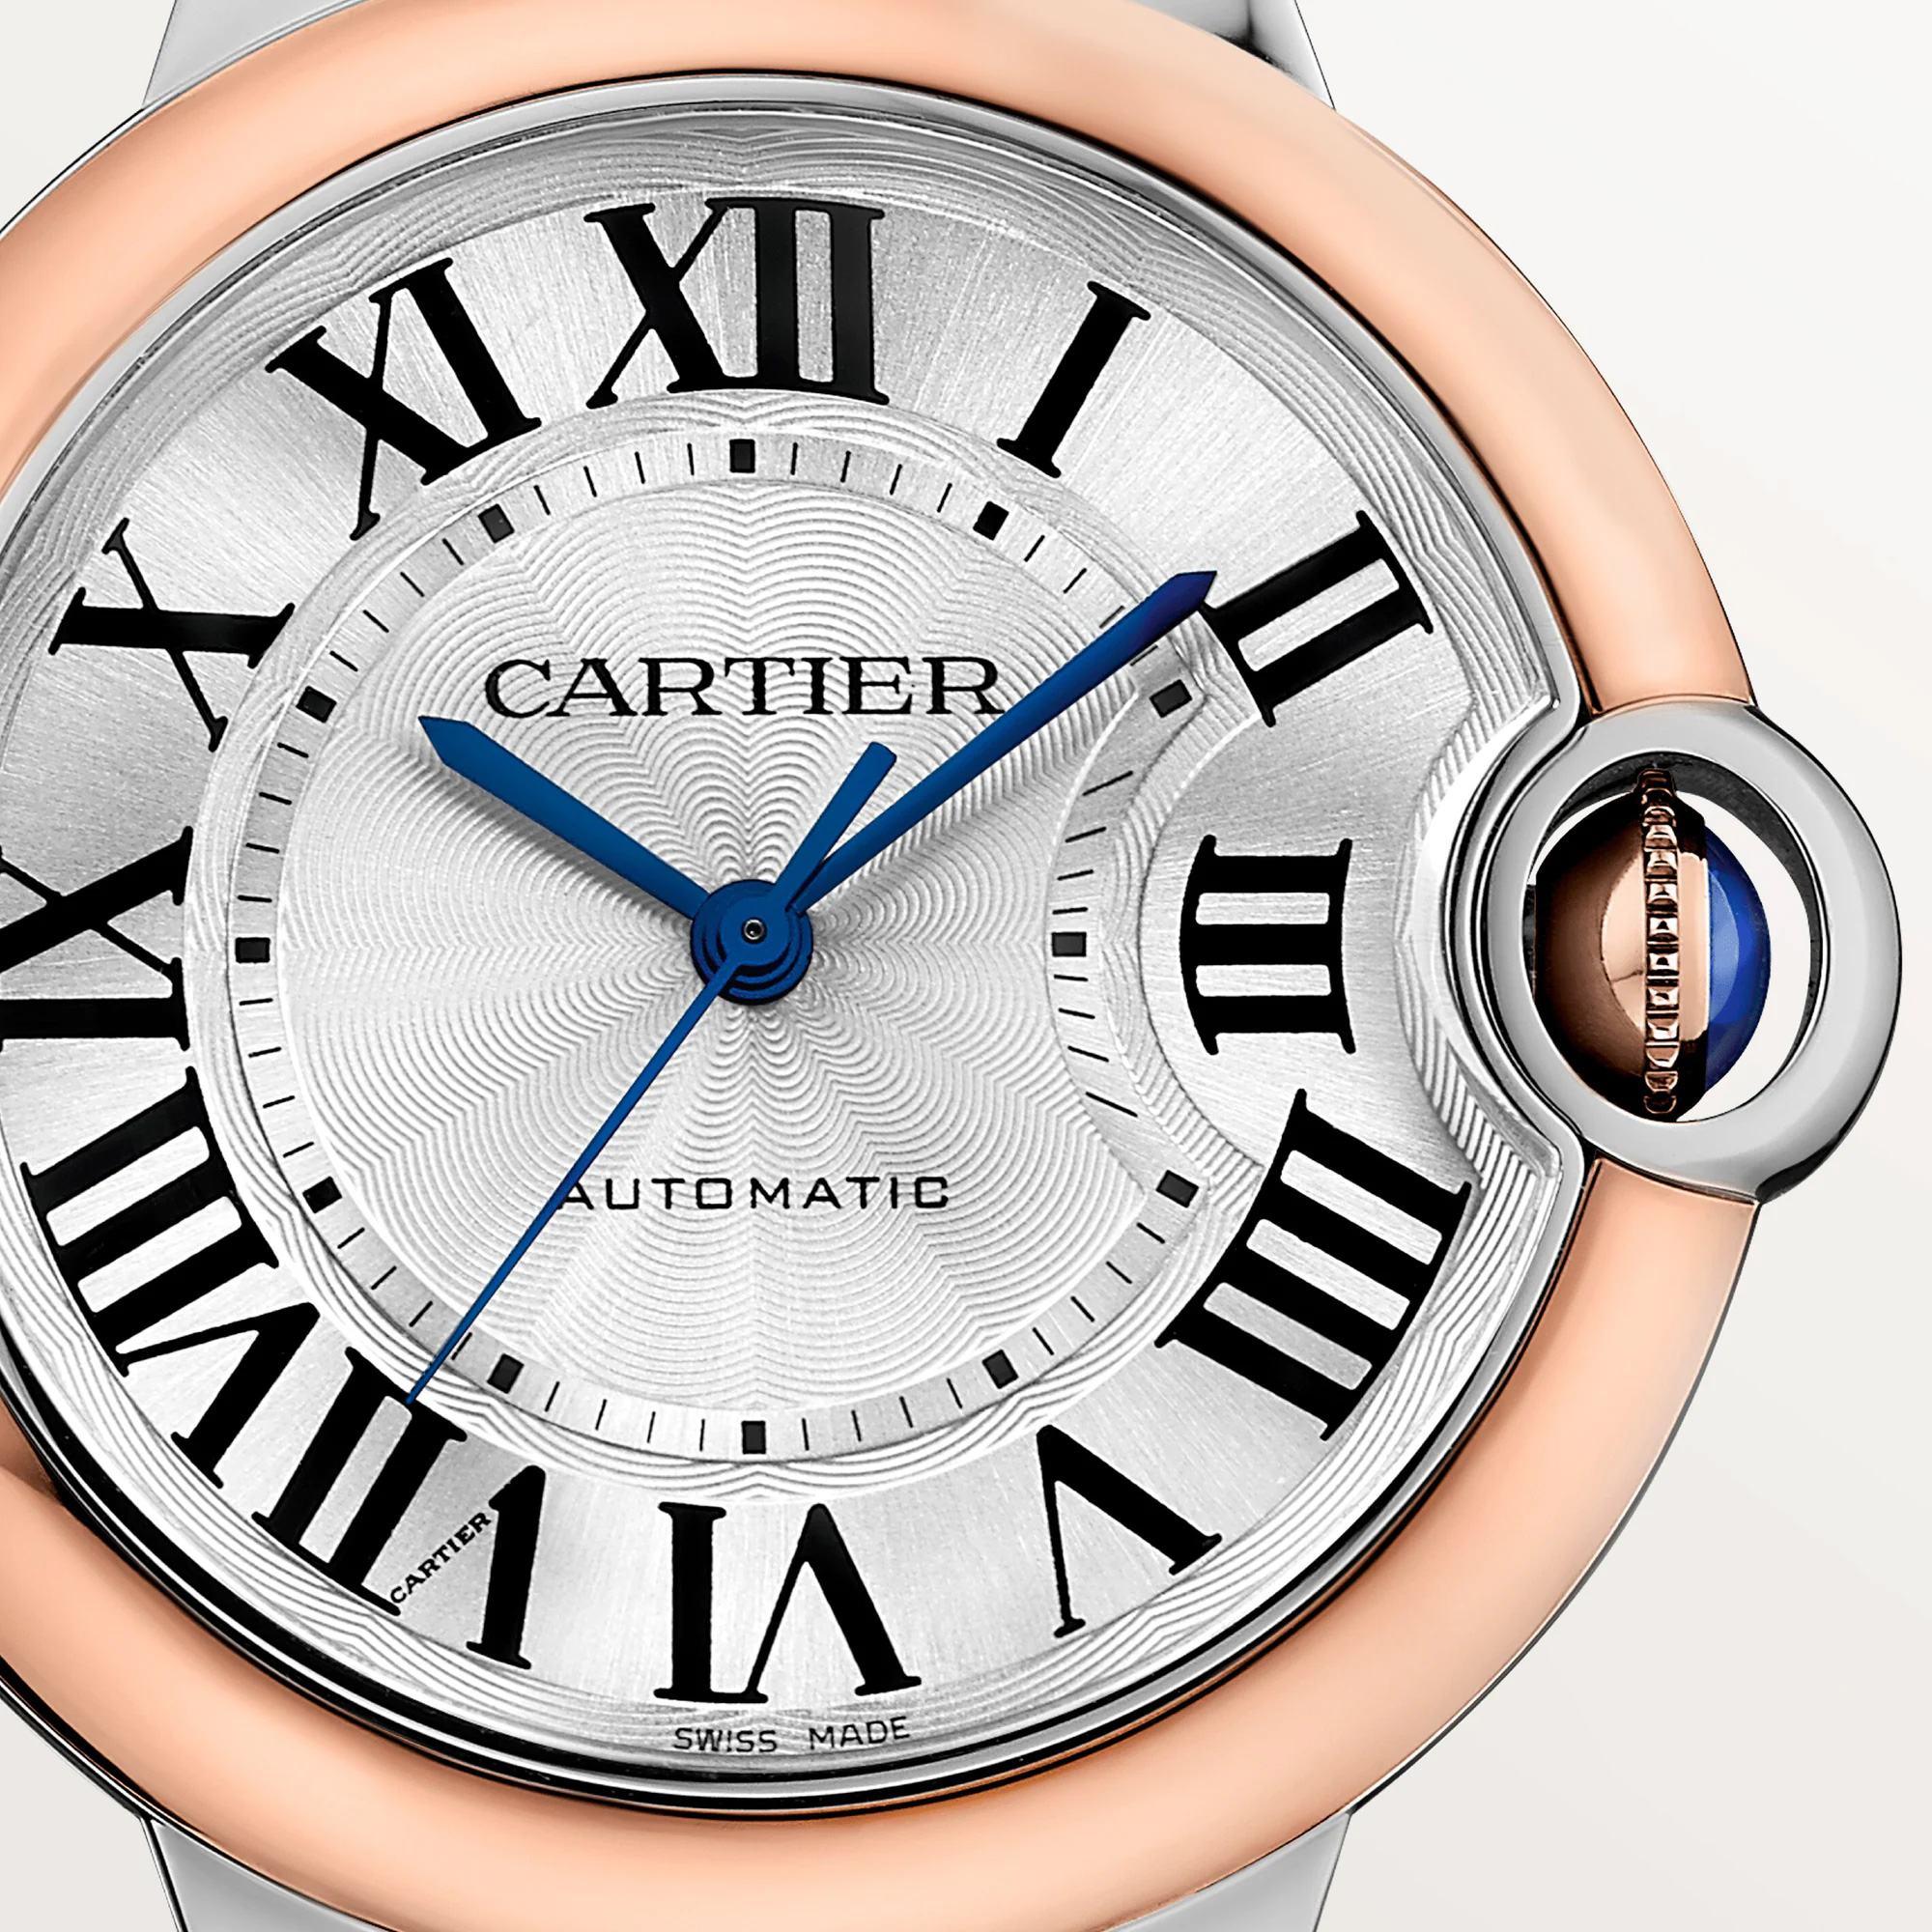 Ballon Bleu de Cartier Watch in Rose Gold, 36mm 3